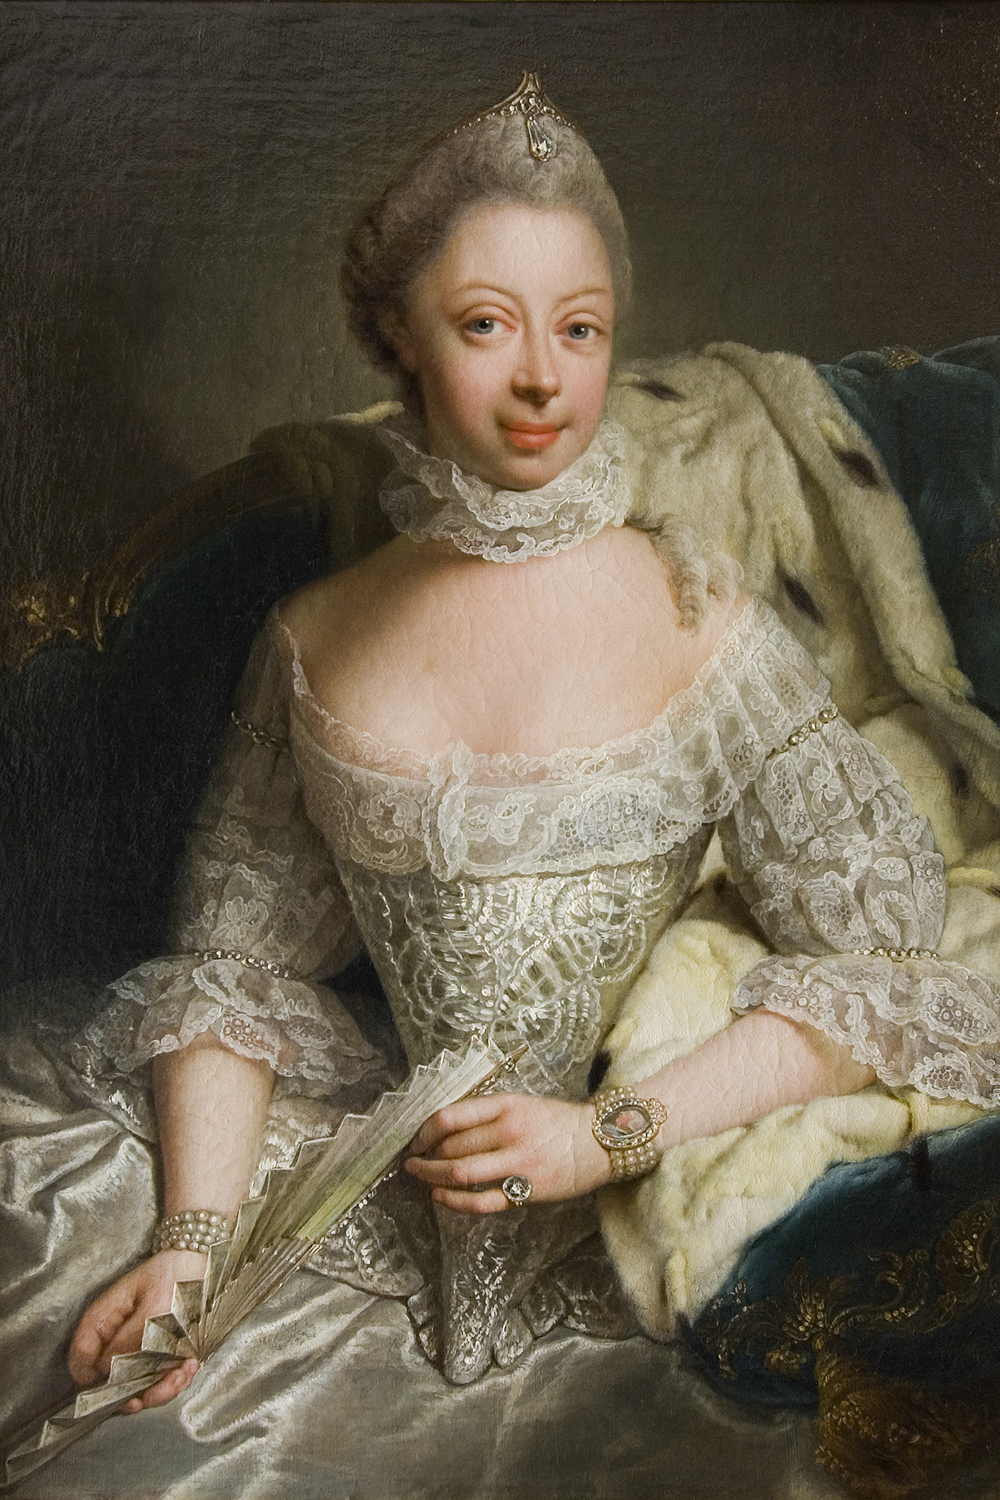 DÚVIDAS - Charlotte em 1762: teoria diz que a rainha tinha sangue africano